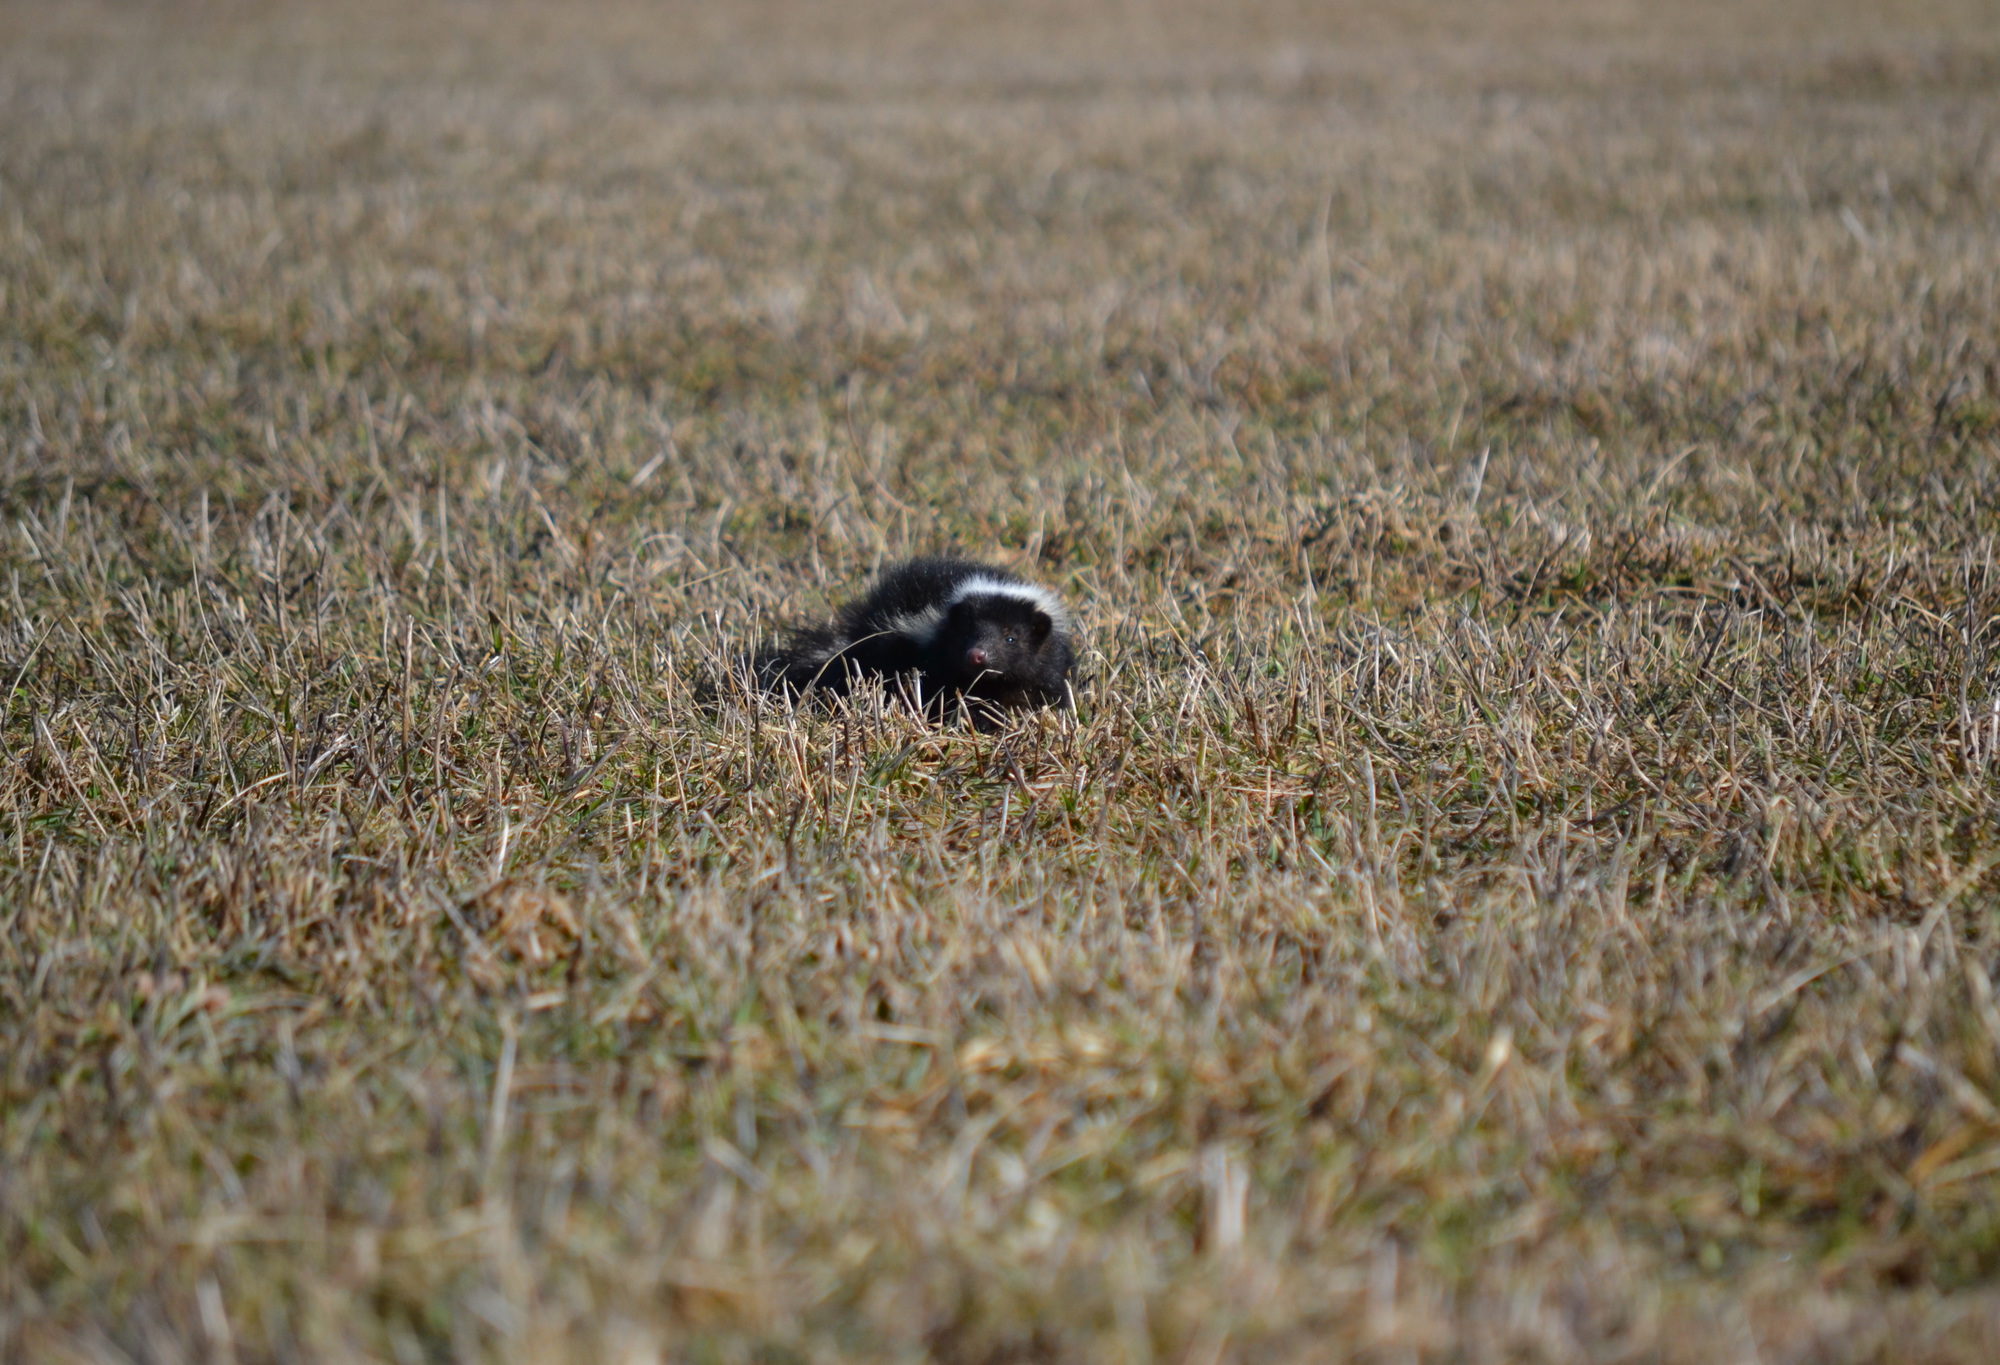 Striped Skunk observed foraging. © Nick Tepper